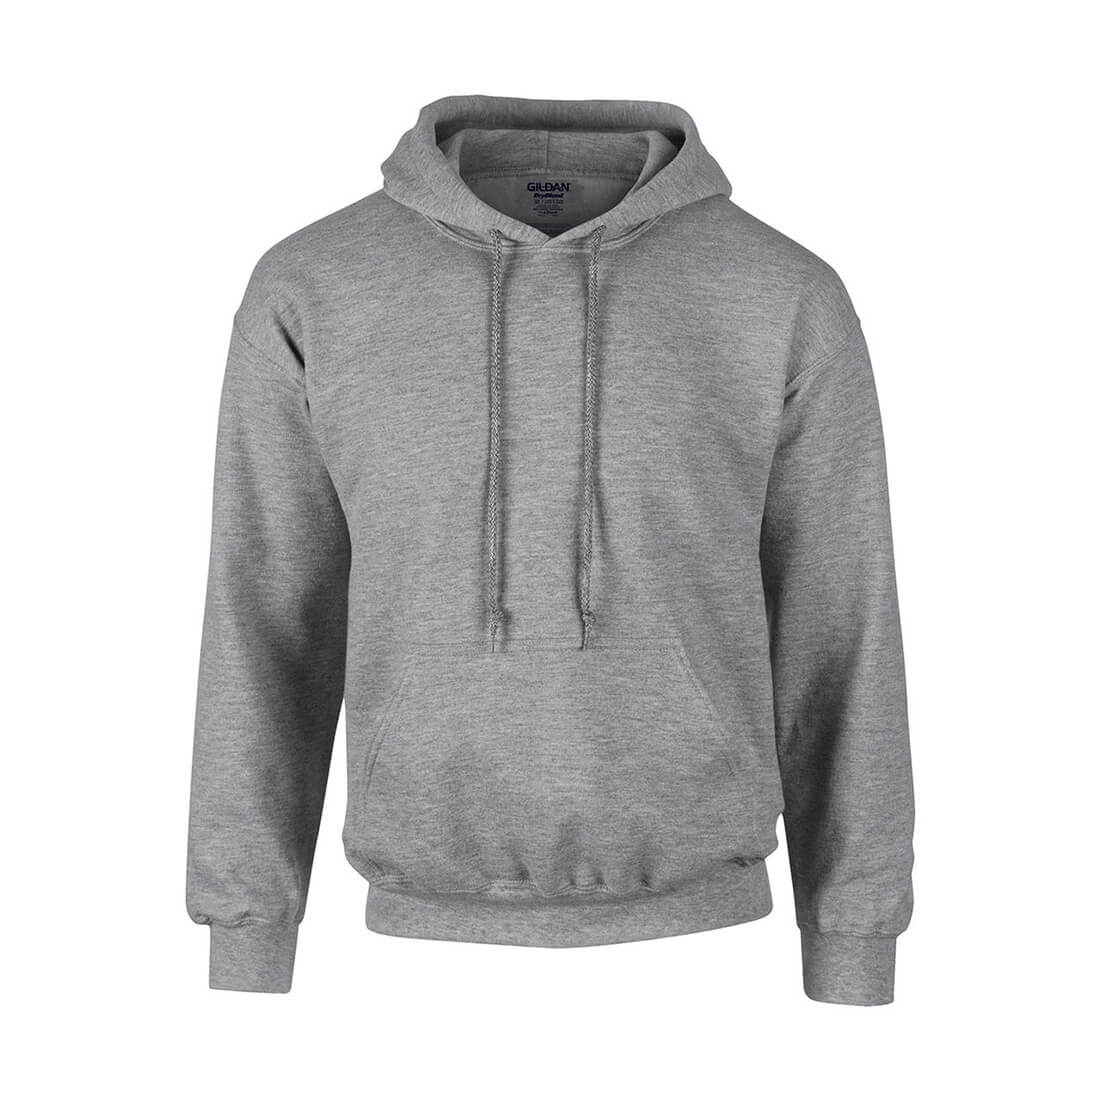 Hooded Sweatshirt - Les vêtements de protection